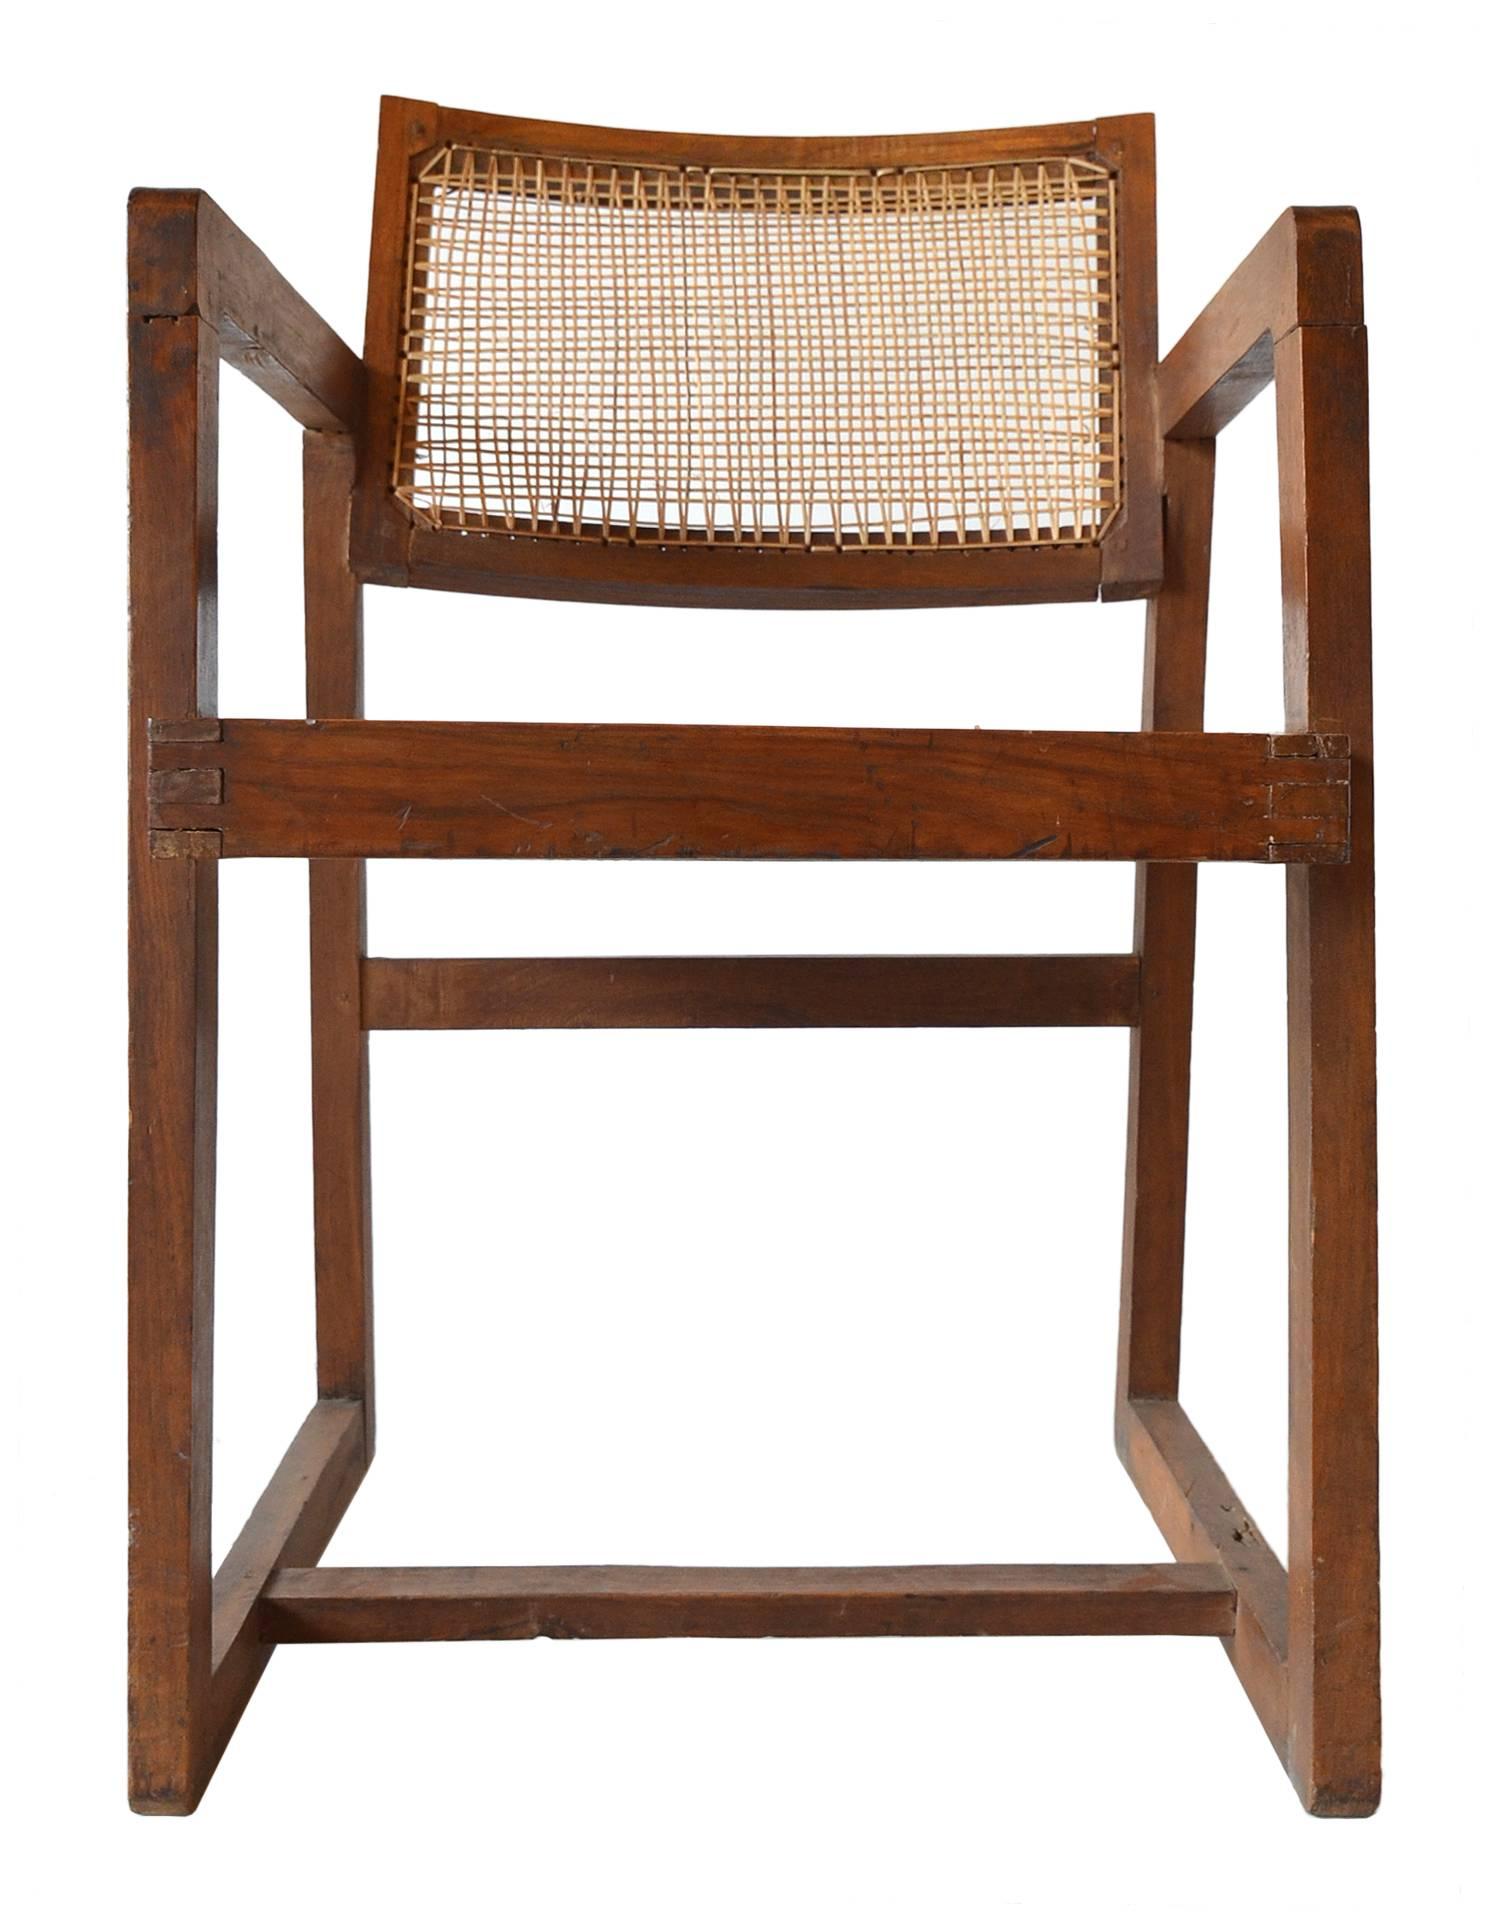 Fauteuil en teck réalisé pour l'université du Punjab à Chandigarh, Inde, vers 1960.
Numéro de modèle PJ-SI-53-A
Cette chaise rare est dans son état d'origine. Seules de la cire et de l'huile ont été appliquées pour préserver la patine et